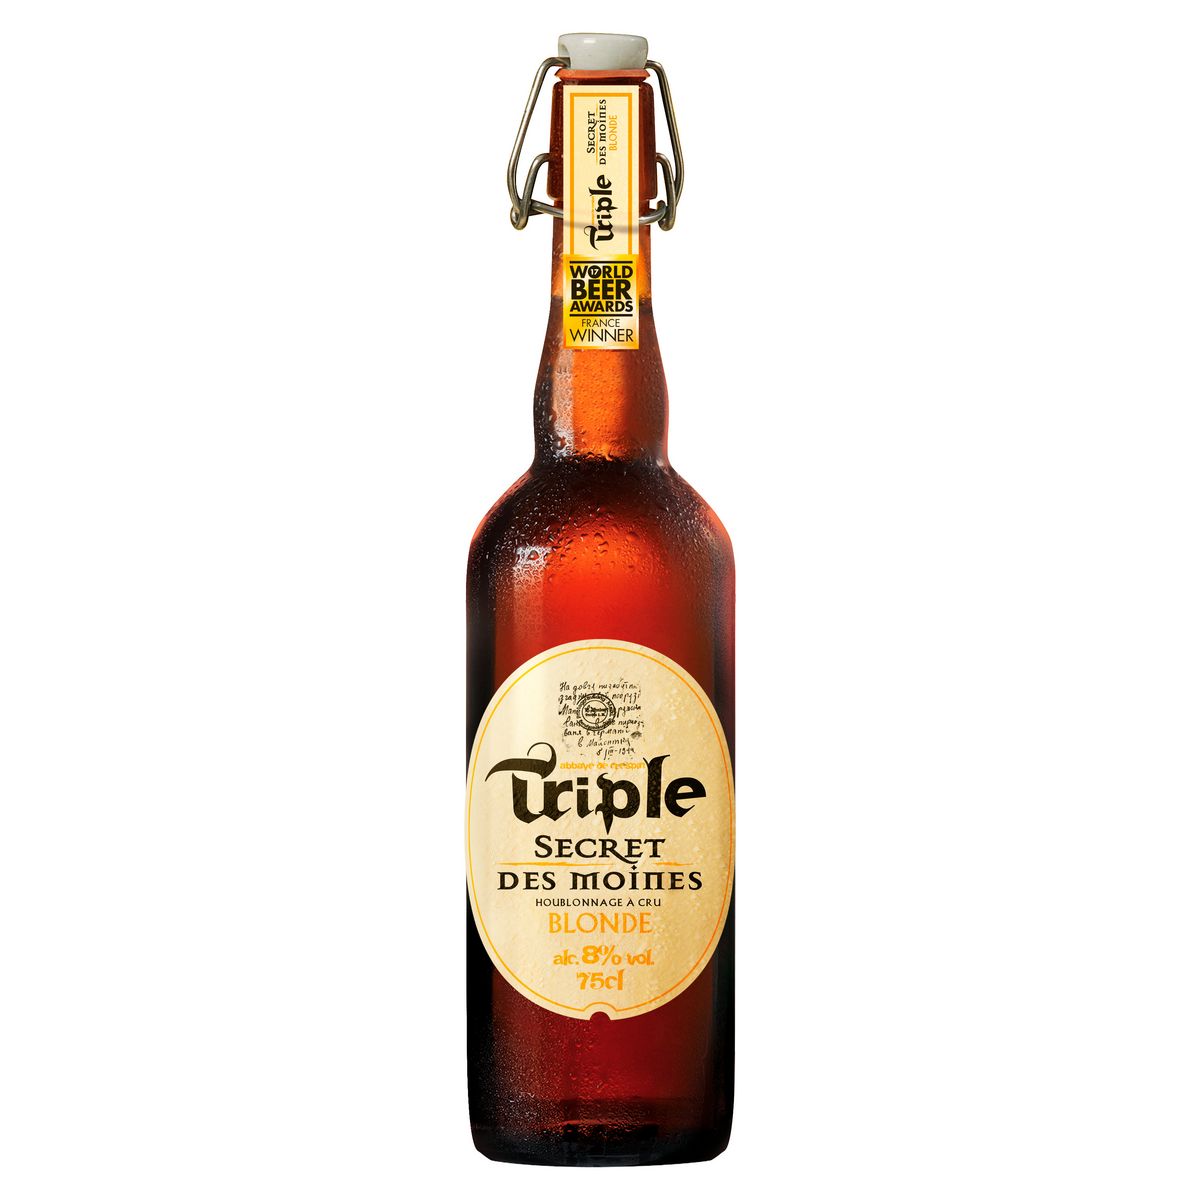 SECRET DES MOINES Bière blonde triple 8% 75cl